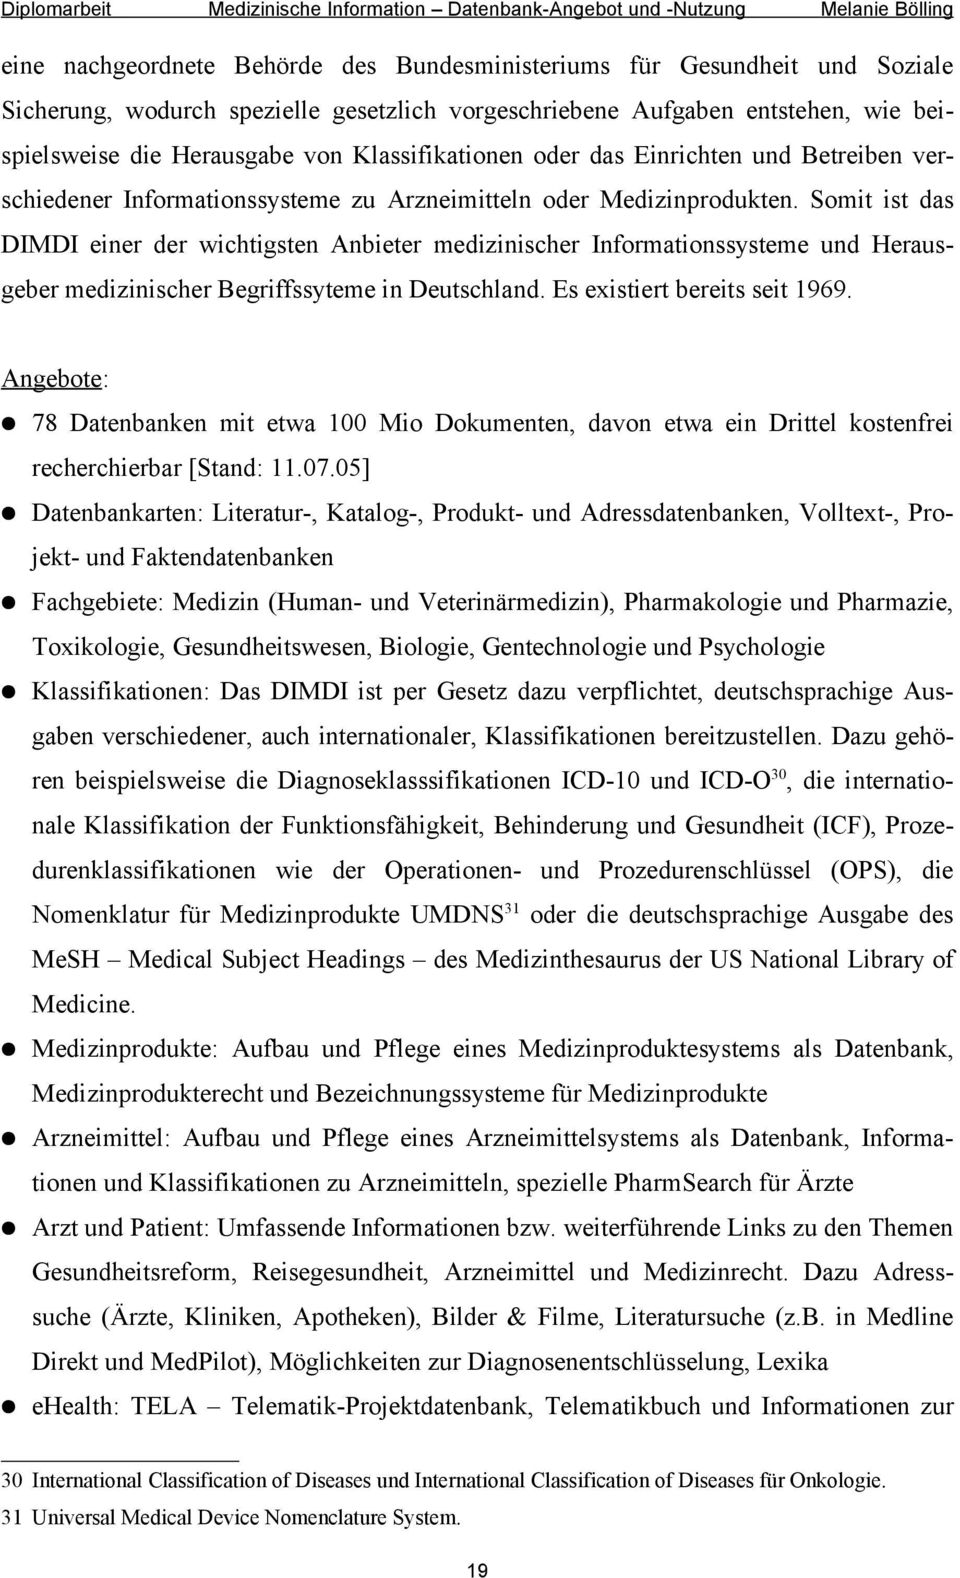 Somit ist das DIMDI einer der wichtigsten Anbieter medizinischer Informationssysteme und Herausgeber medizinischer Begriffssyteme in Deutschland. Es existiert bereits seit 1969.